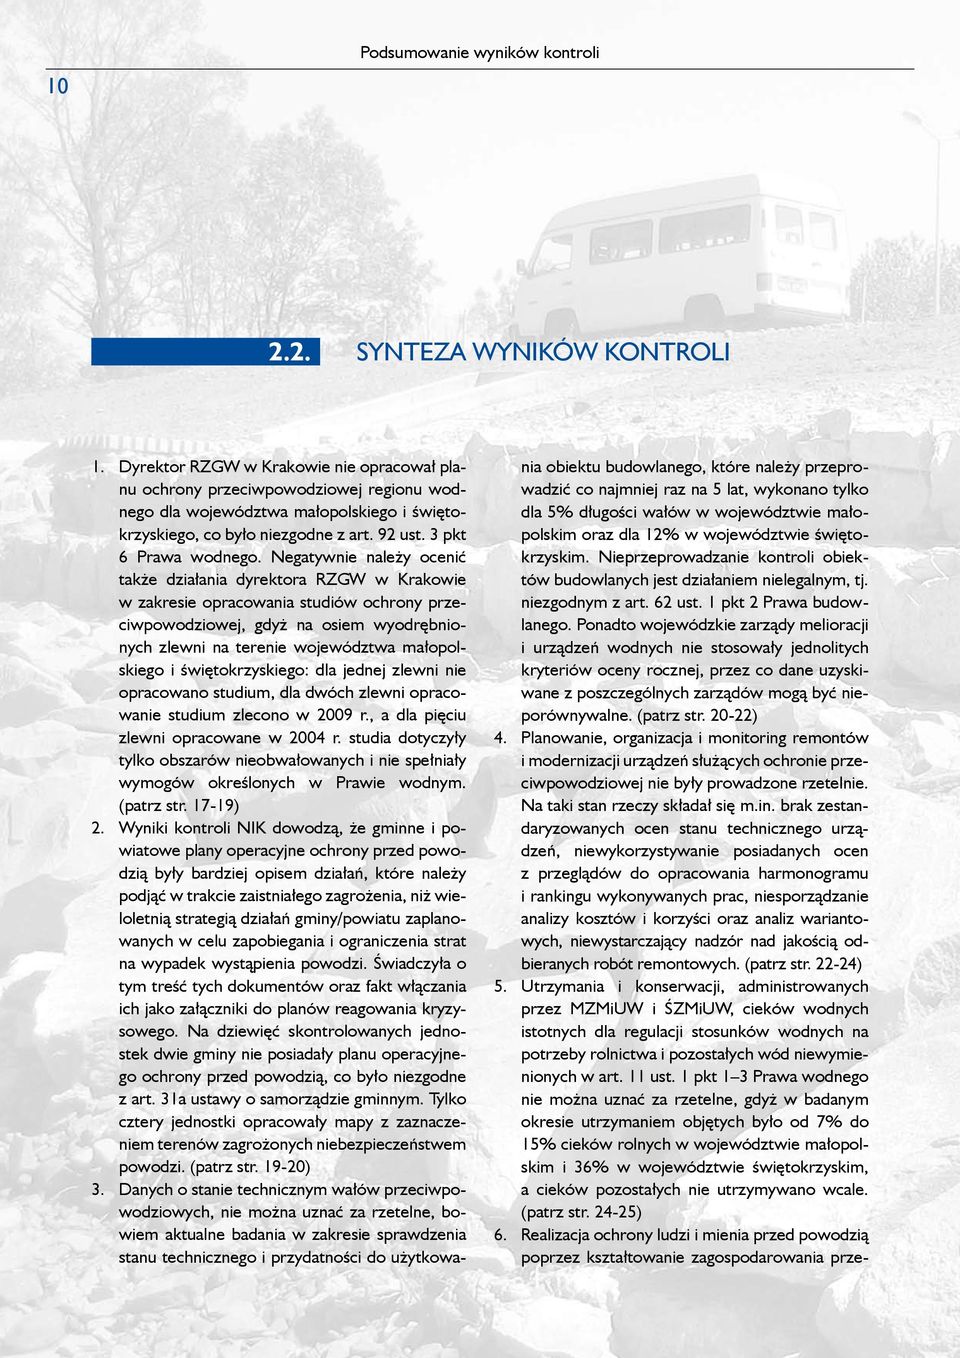 Negatywnie należy ocenić także działania dyrektora RZGW w Krakowie w zakresie opracowania studiów ochrony przeciwpowodziowej, gdyż na osiem wyodrębnionych zlewni na terenie województwa małopolskiego